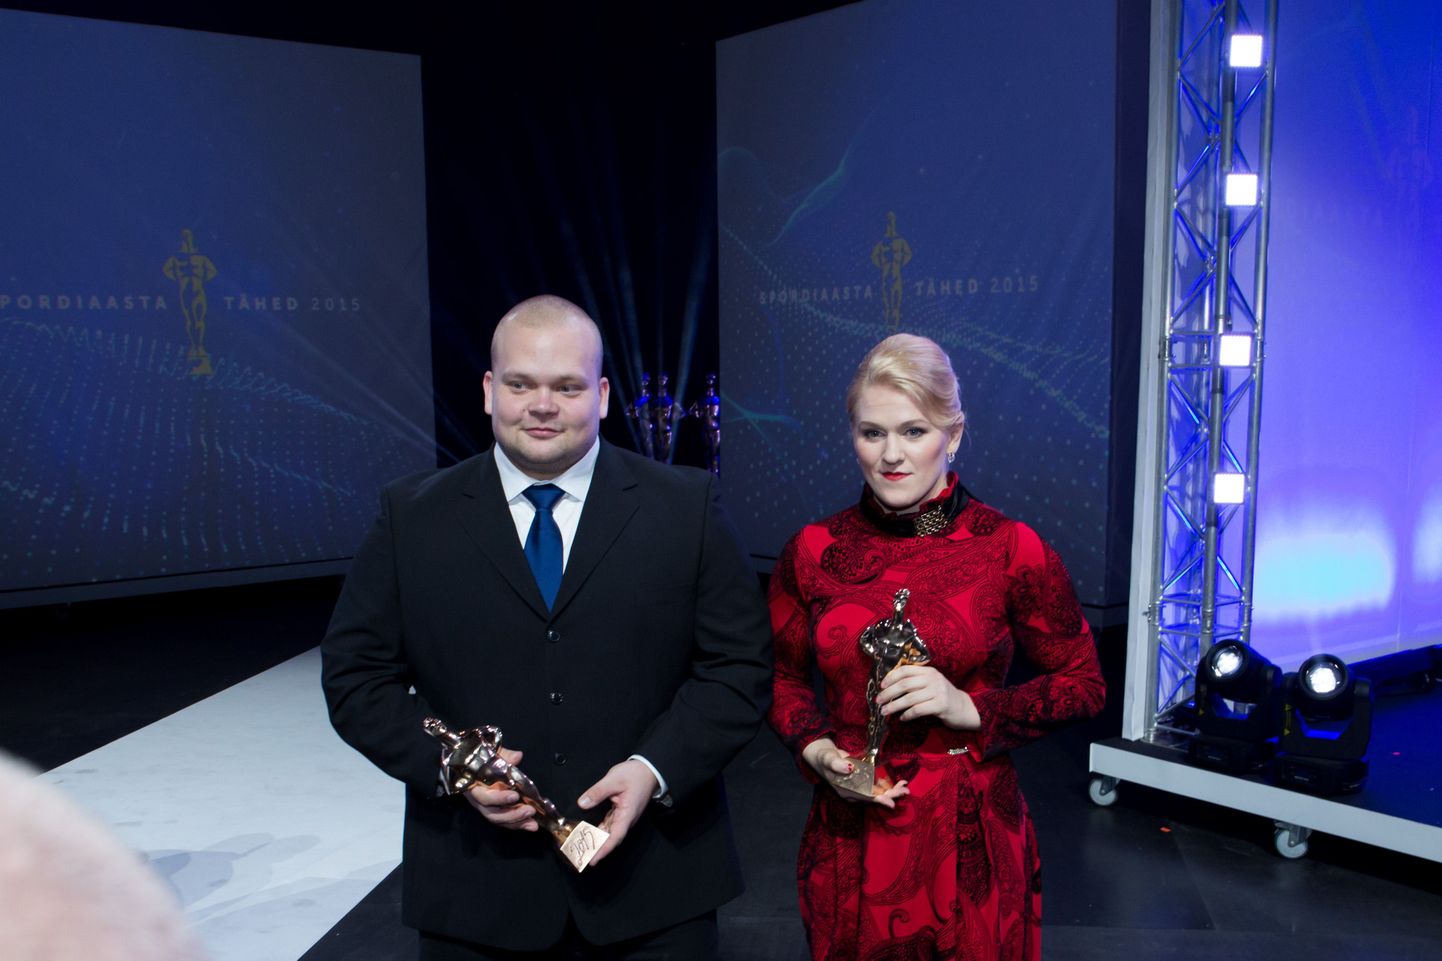 Epp Mäe ja Martin Seim on spordi aastapreemia laureaadid.
Foto: aasta sporditähed 2015 gala.